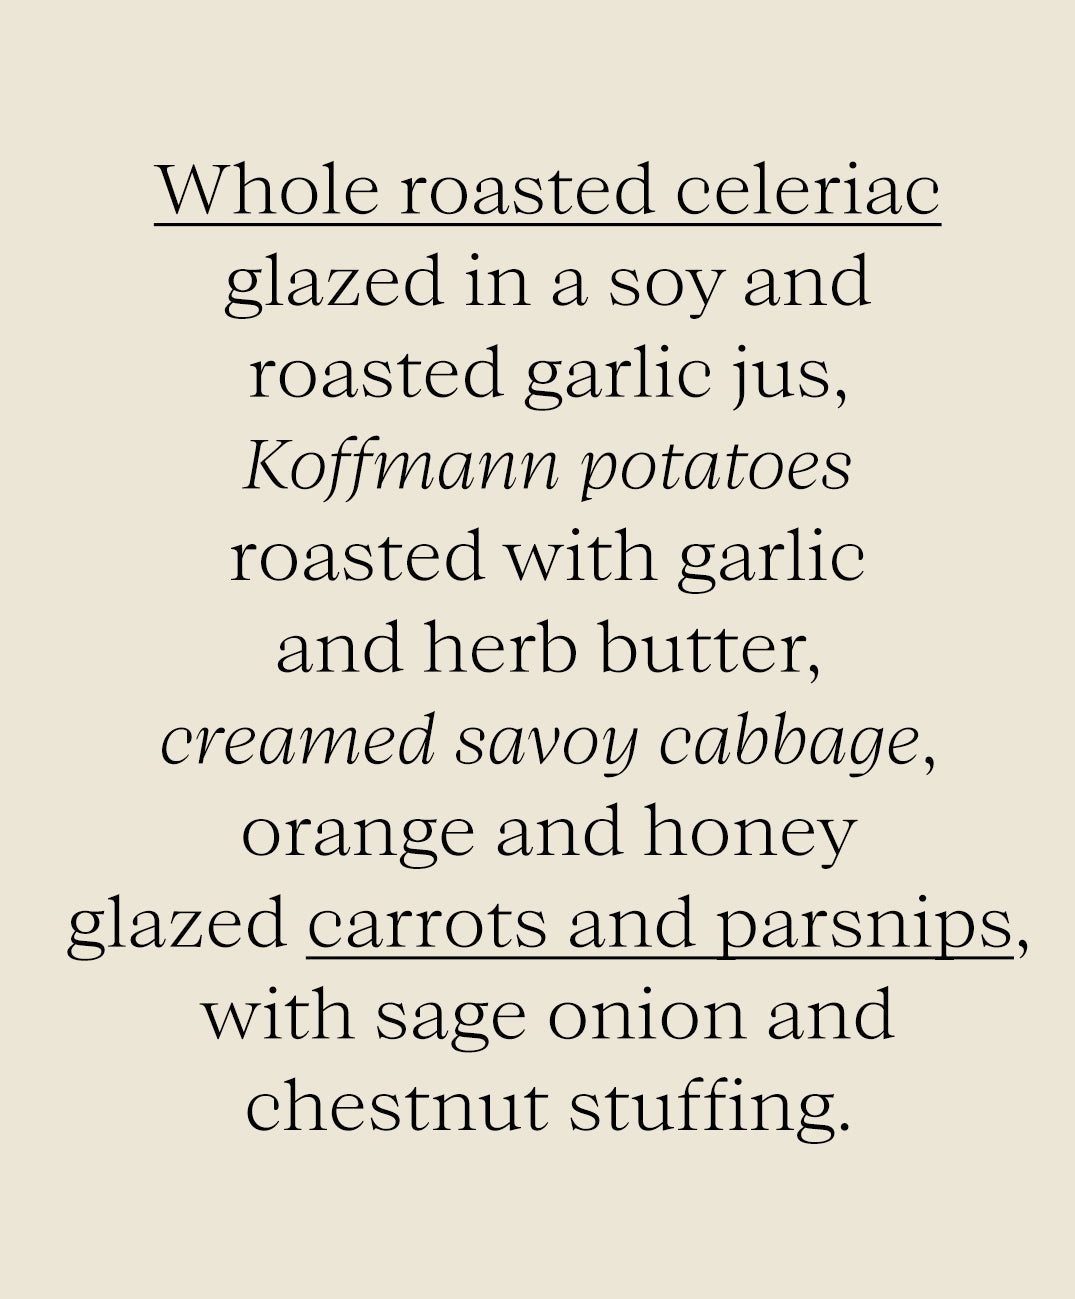 The Sunday Roast Collection - Truffle & Garlic Glazed Whole Roasted Celeriac